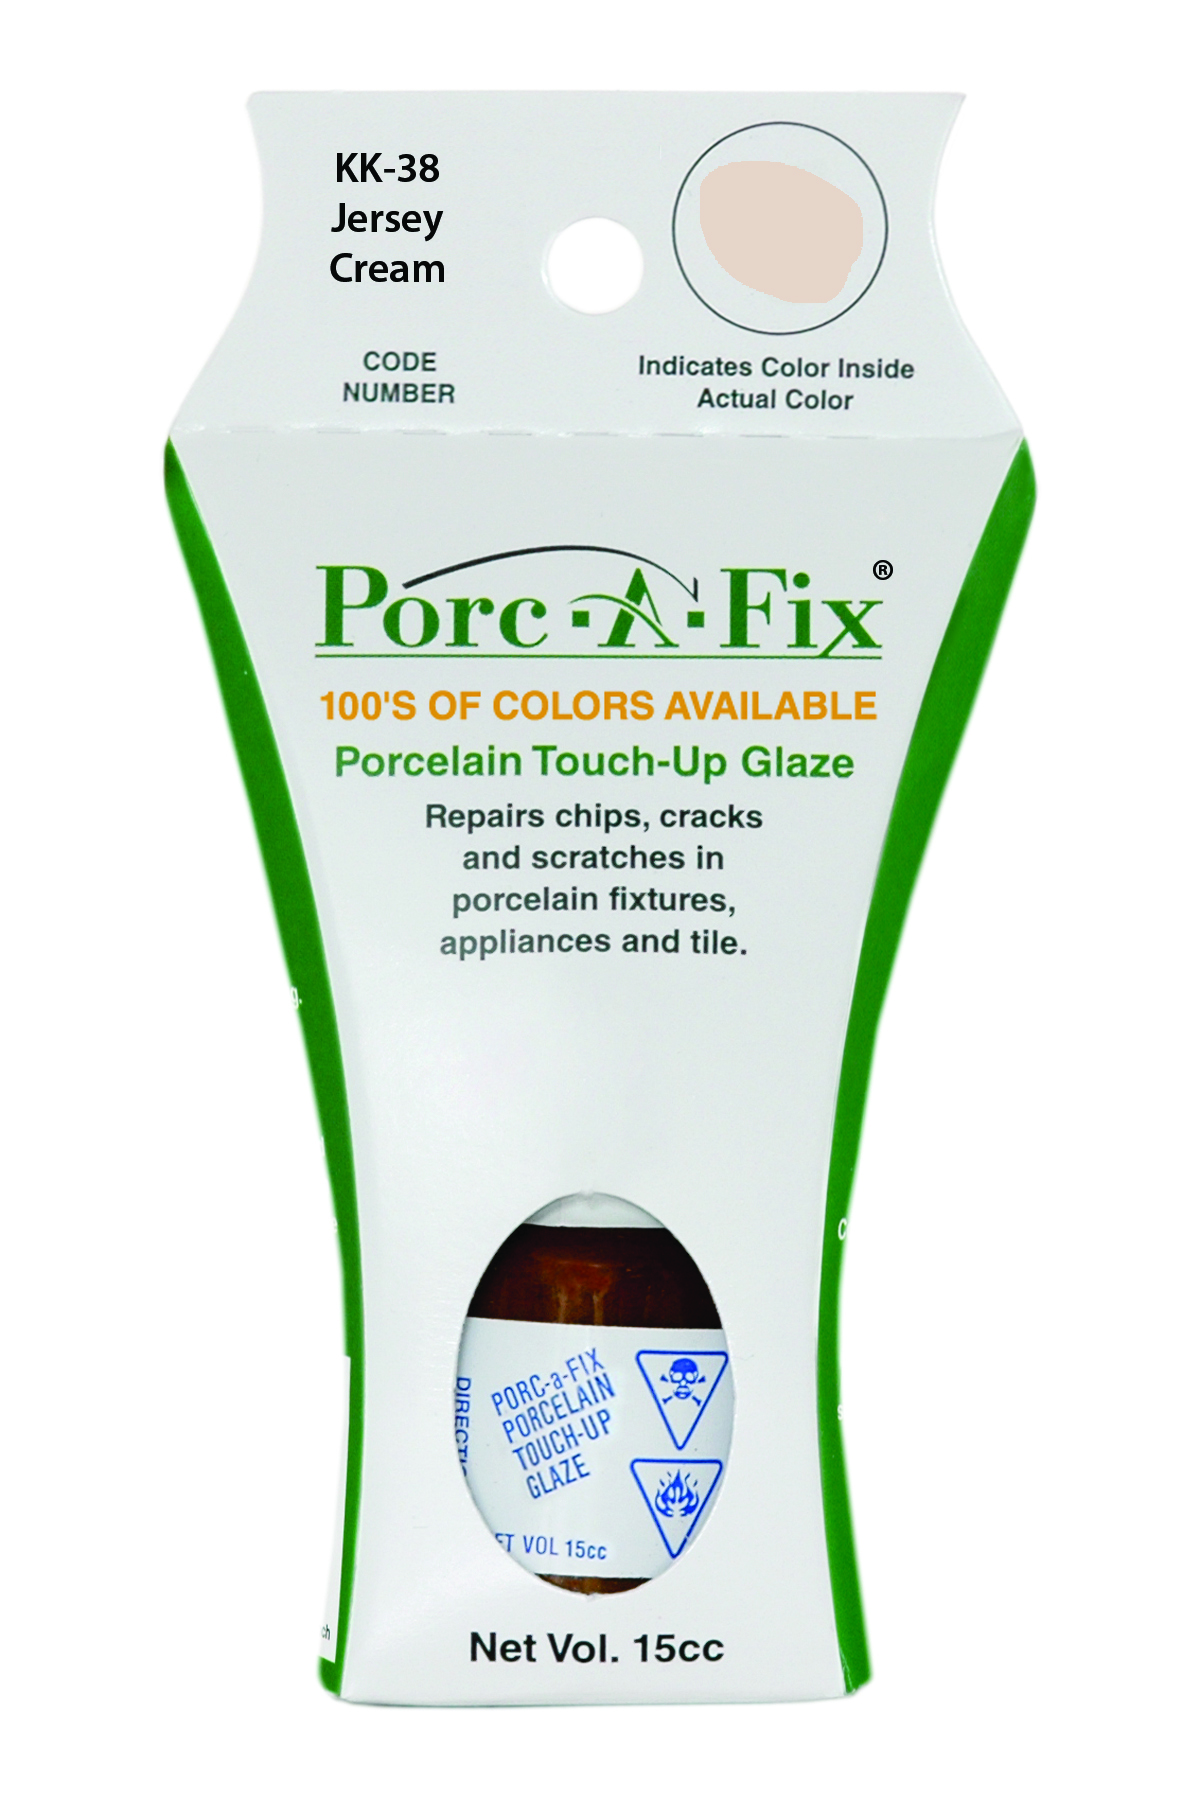 Fixture-Fix | KK-38 | Porc-A-Fix Touch-Up Glaze Kohler Jersey Cream - Compatible with Kohler K-500306-12 Touch Up Paint Kit - JERSEY CREAM